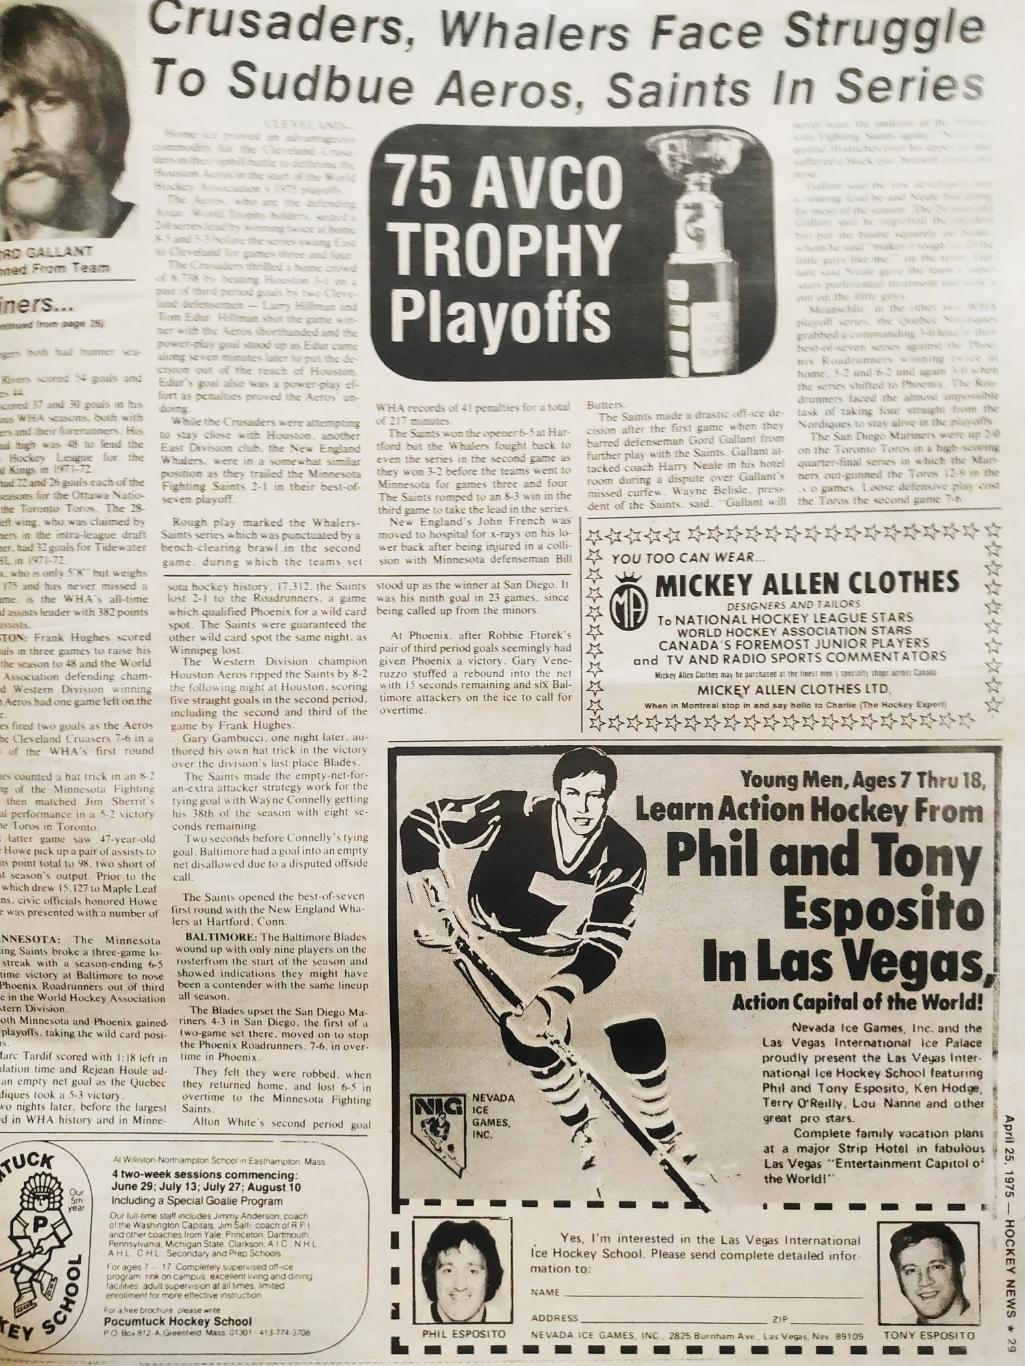 ХОККЕЙ ЖУРНАЛ ЕЖЕНЕДЕЛЬНИК НХЛ НОВОСТИ ХОККЕЯ APR.25 1975 NHL THE HOCKEY NEWS 6